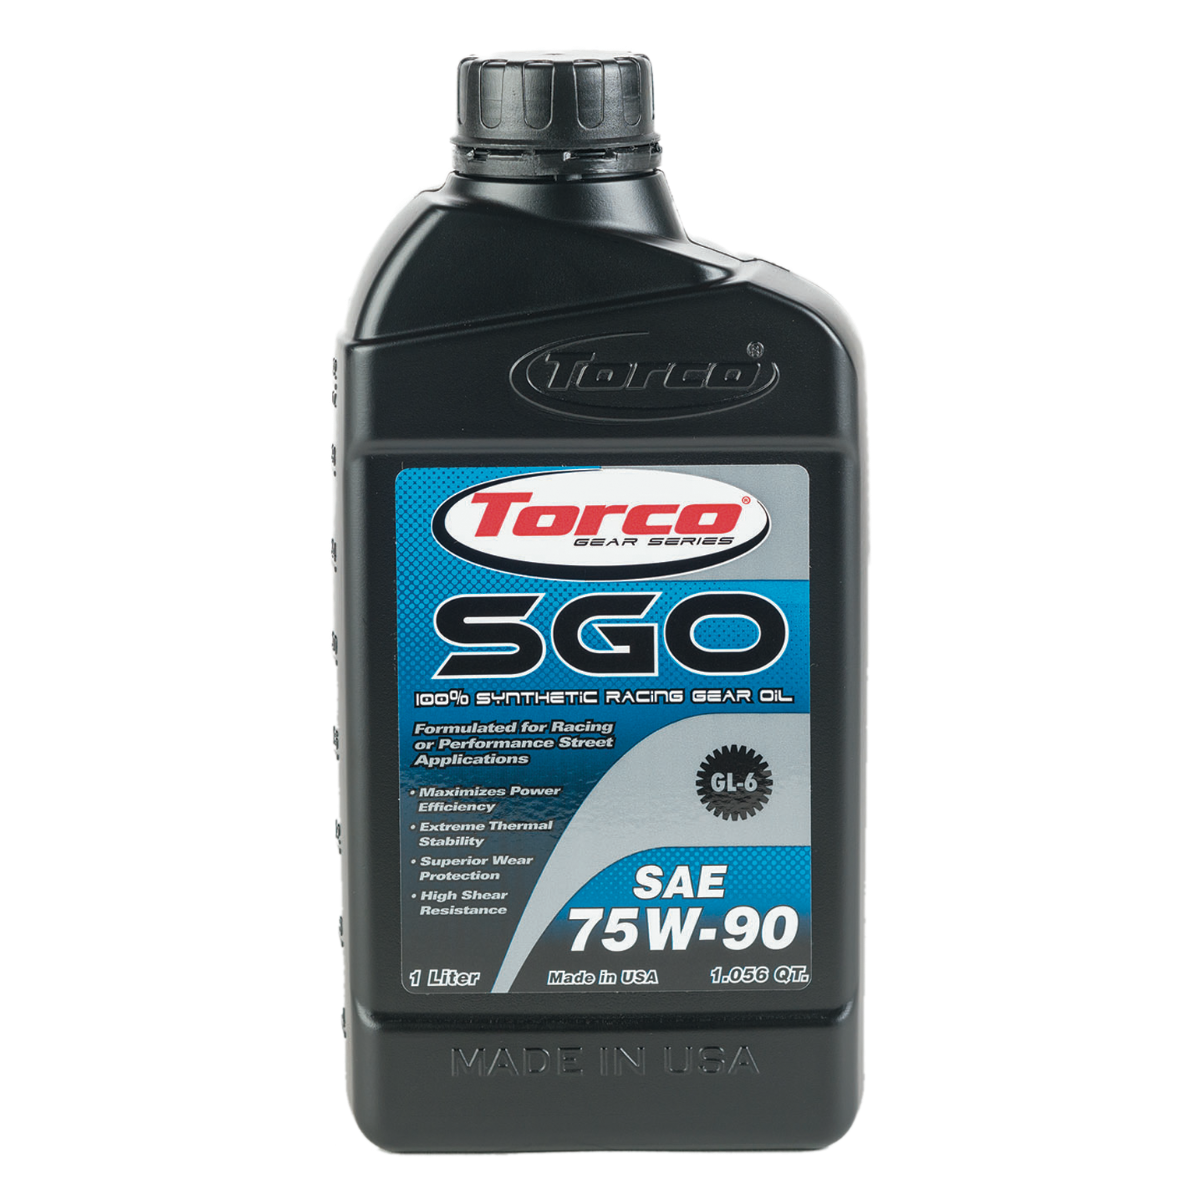 SGO Racing Gear Oil - TorcoUSA